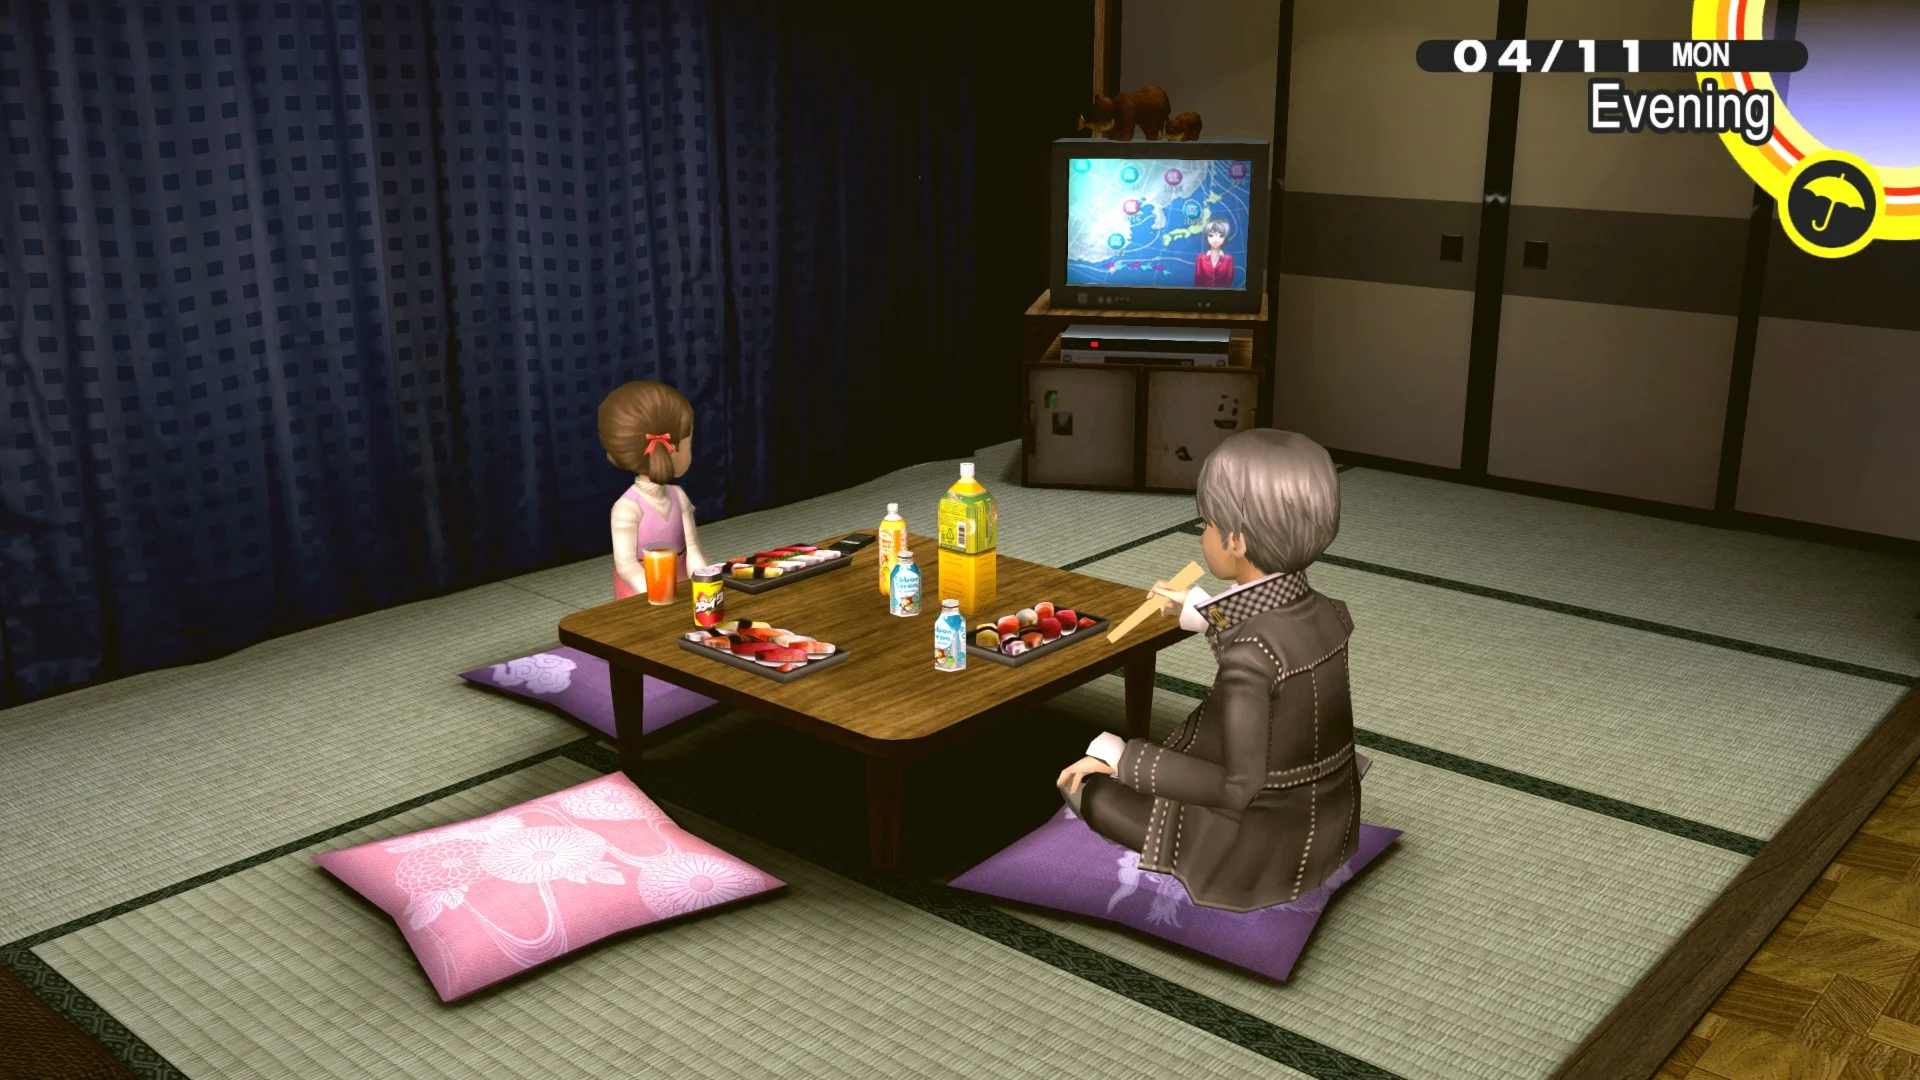 Persona 4 Golden на PC. Почему порт старой японской RPG вышел в топы продаж Steam? - фото 3